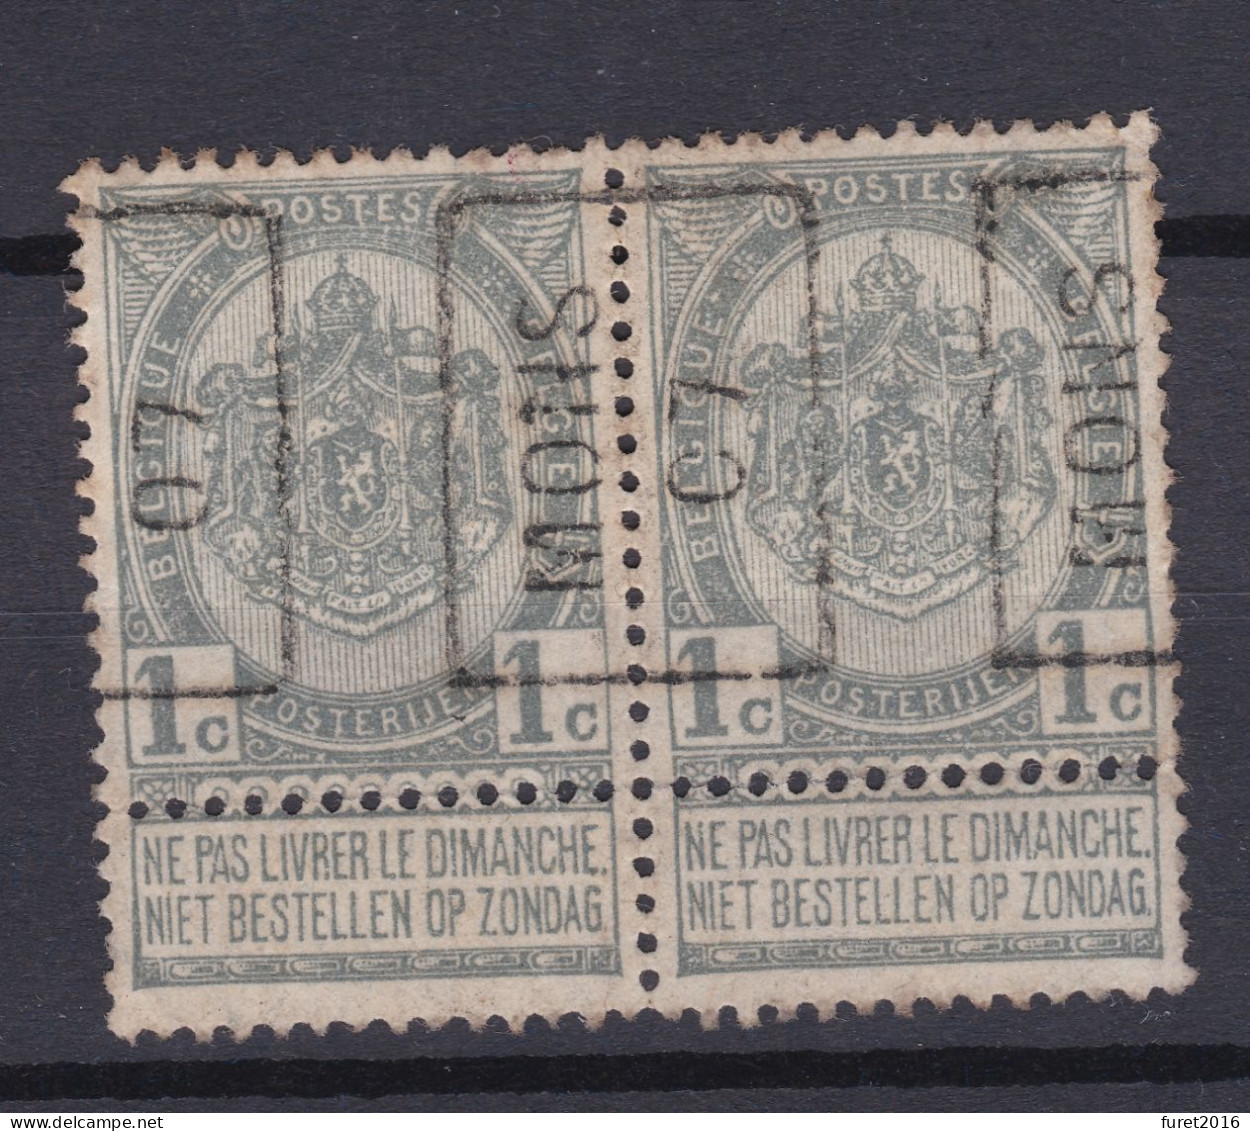 N° 53 PREO MONS 07   X Gomme Avec Charniere De Soutien A La Bandelette - Roulettes 1900-09